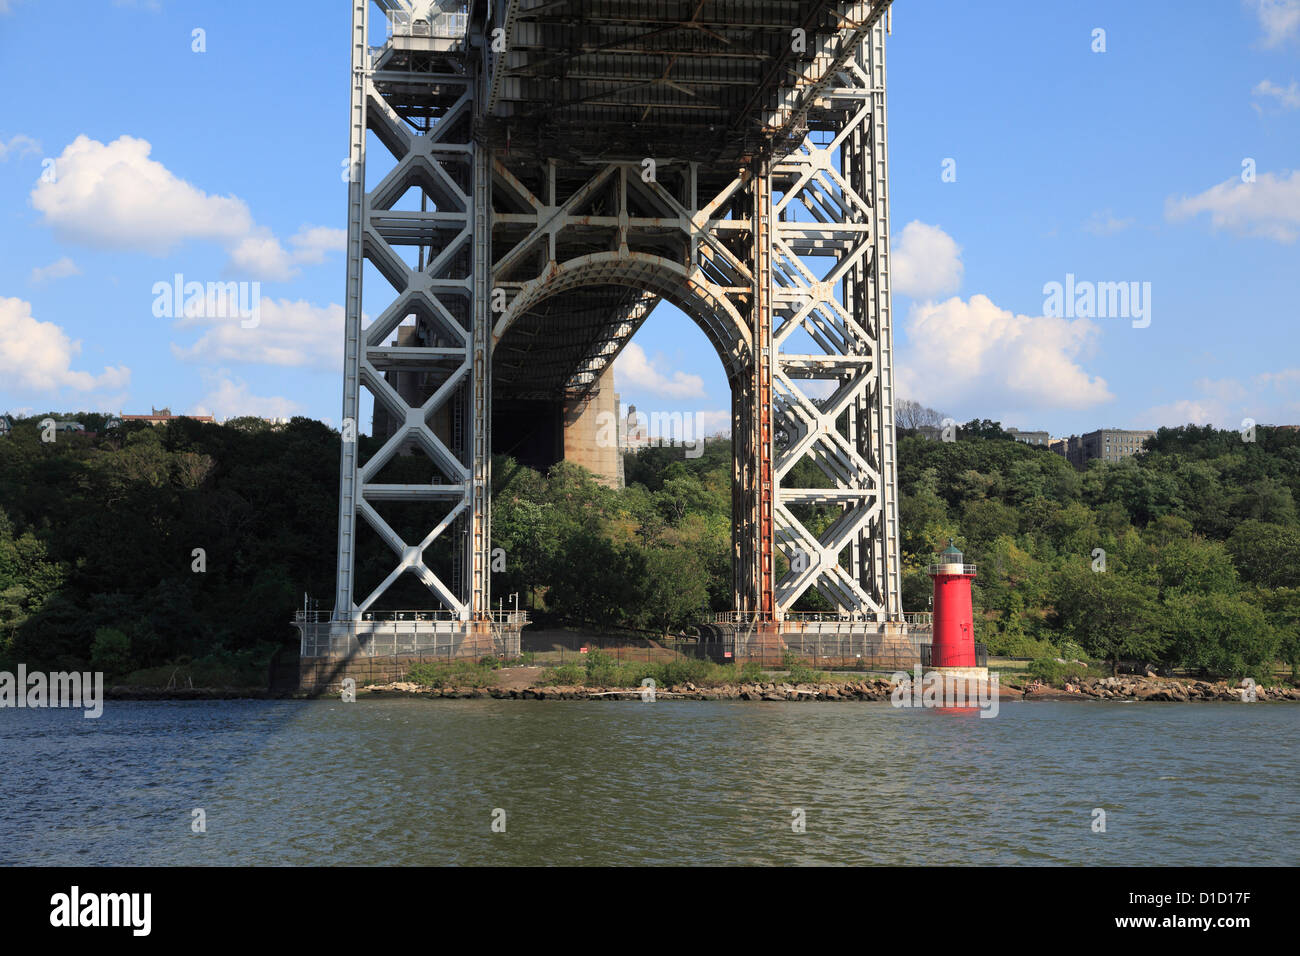 Petit phare rouge, Jeffrey's Hook George Washington Bridge, New York City, États-Unis d'Amérique, Amérique du Nord Banque D'Images